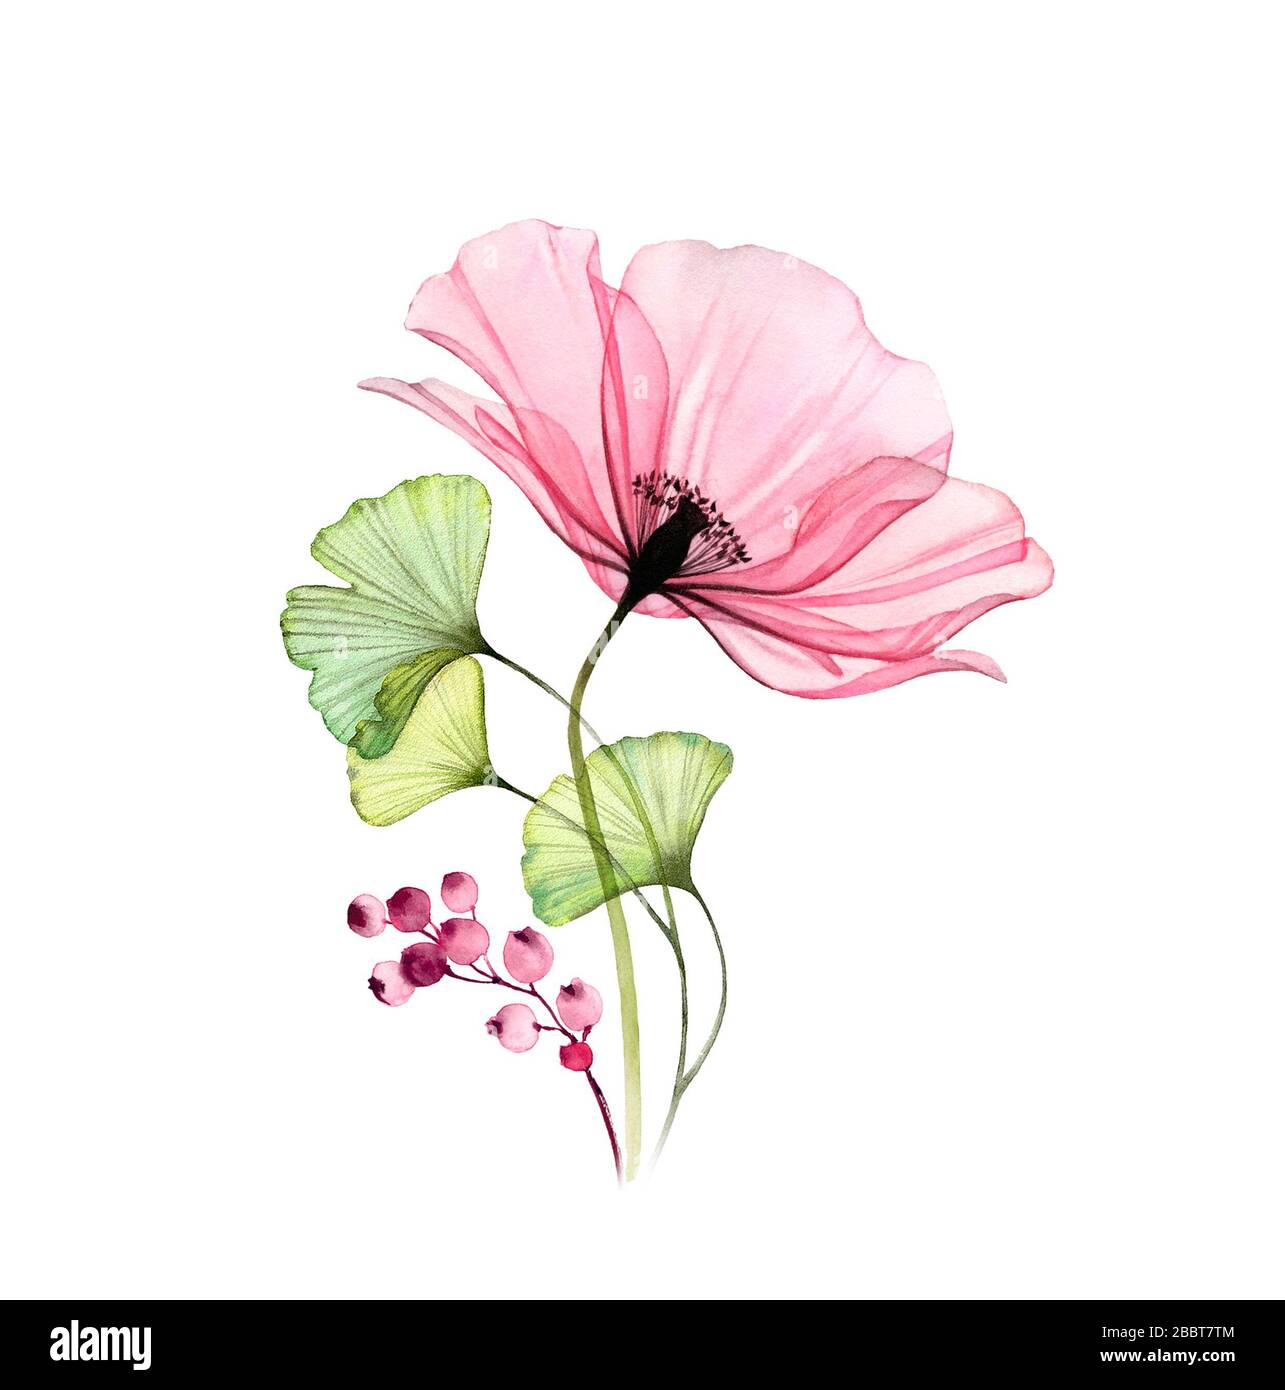 Wasserfarben-Poppy-Bouquet. Große rosafarbene Blume mit Blättern und Beeren isoliert auf Weiß. Handgemalte Kunstwerke mit detaillierten Kronblättern. Botanische Illustration Stockfoto